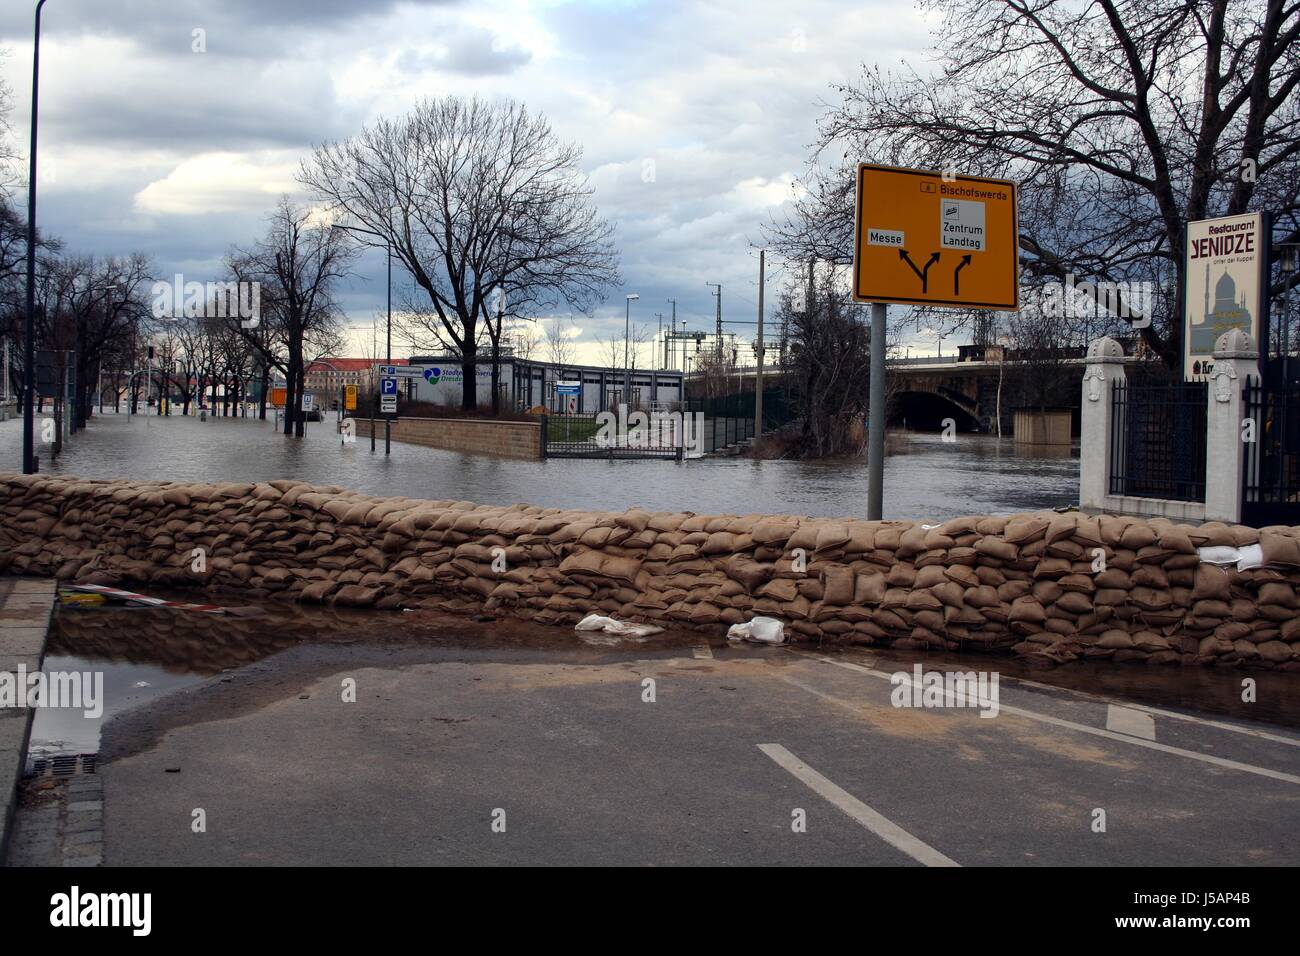 Trasporto di traffico alluvione di Dresda alta marea elbe bloccare contrappeso sacchi di sabbia acqua Foto Stock